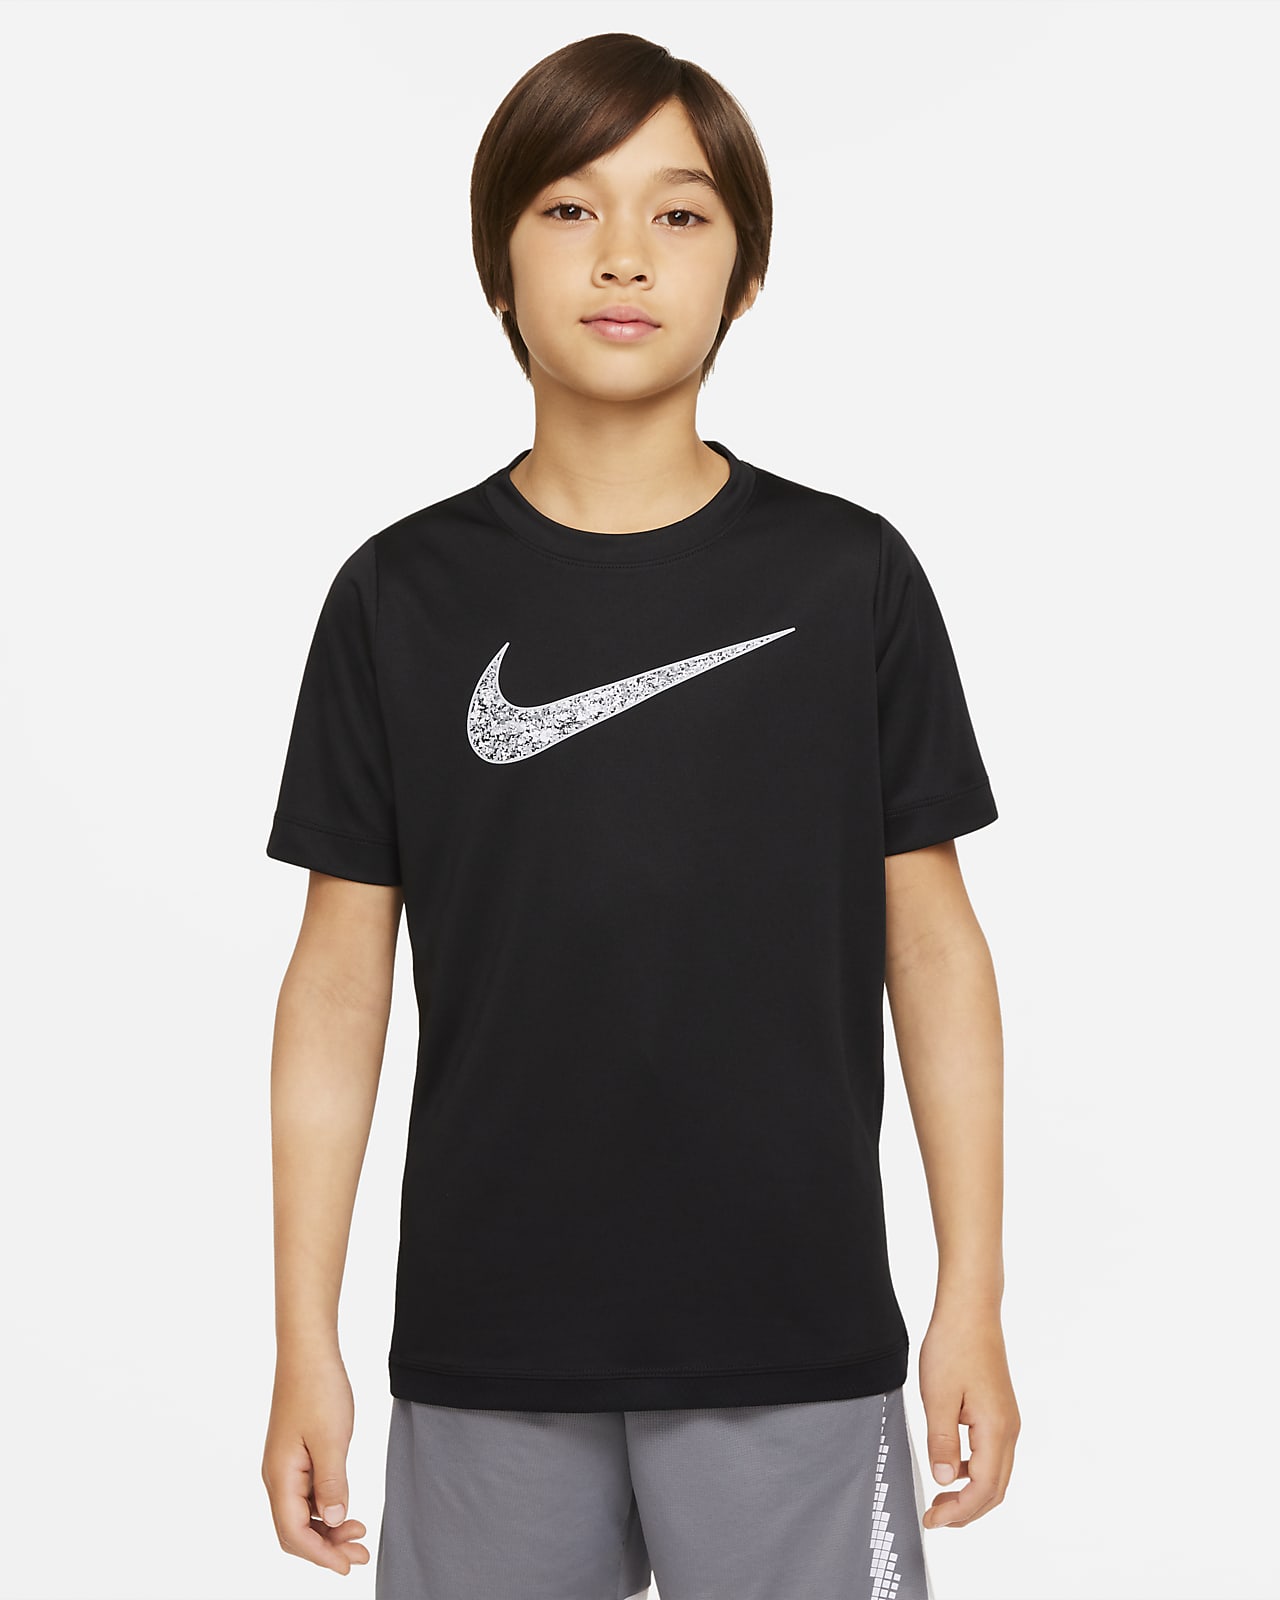 เสื้อเทรนนิ่งเด็กโตมีกราฟิก Nike Dri-FIT Trophy (ชาย)